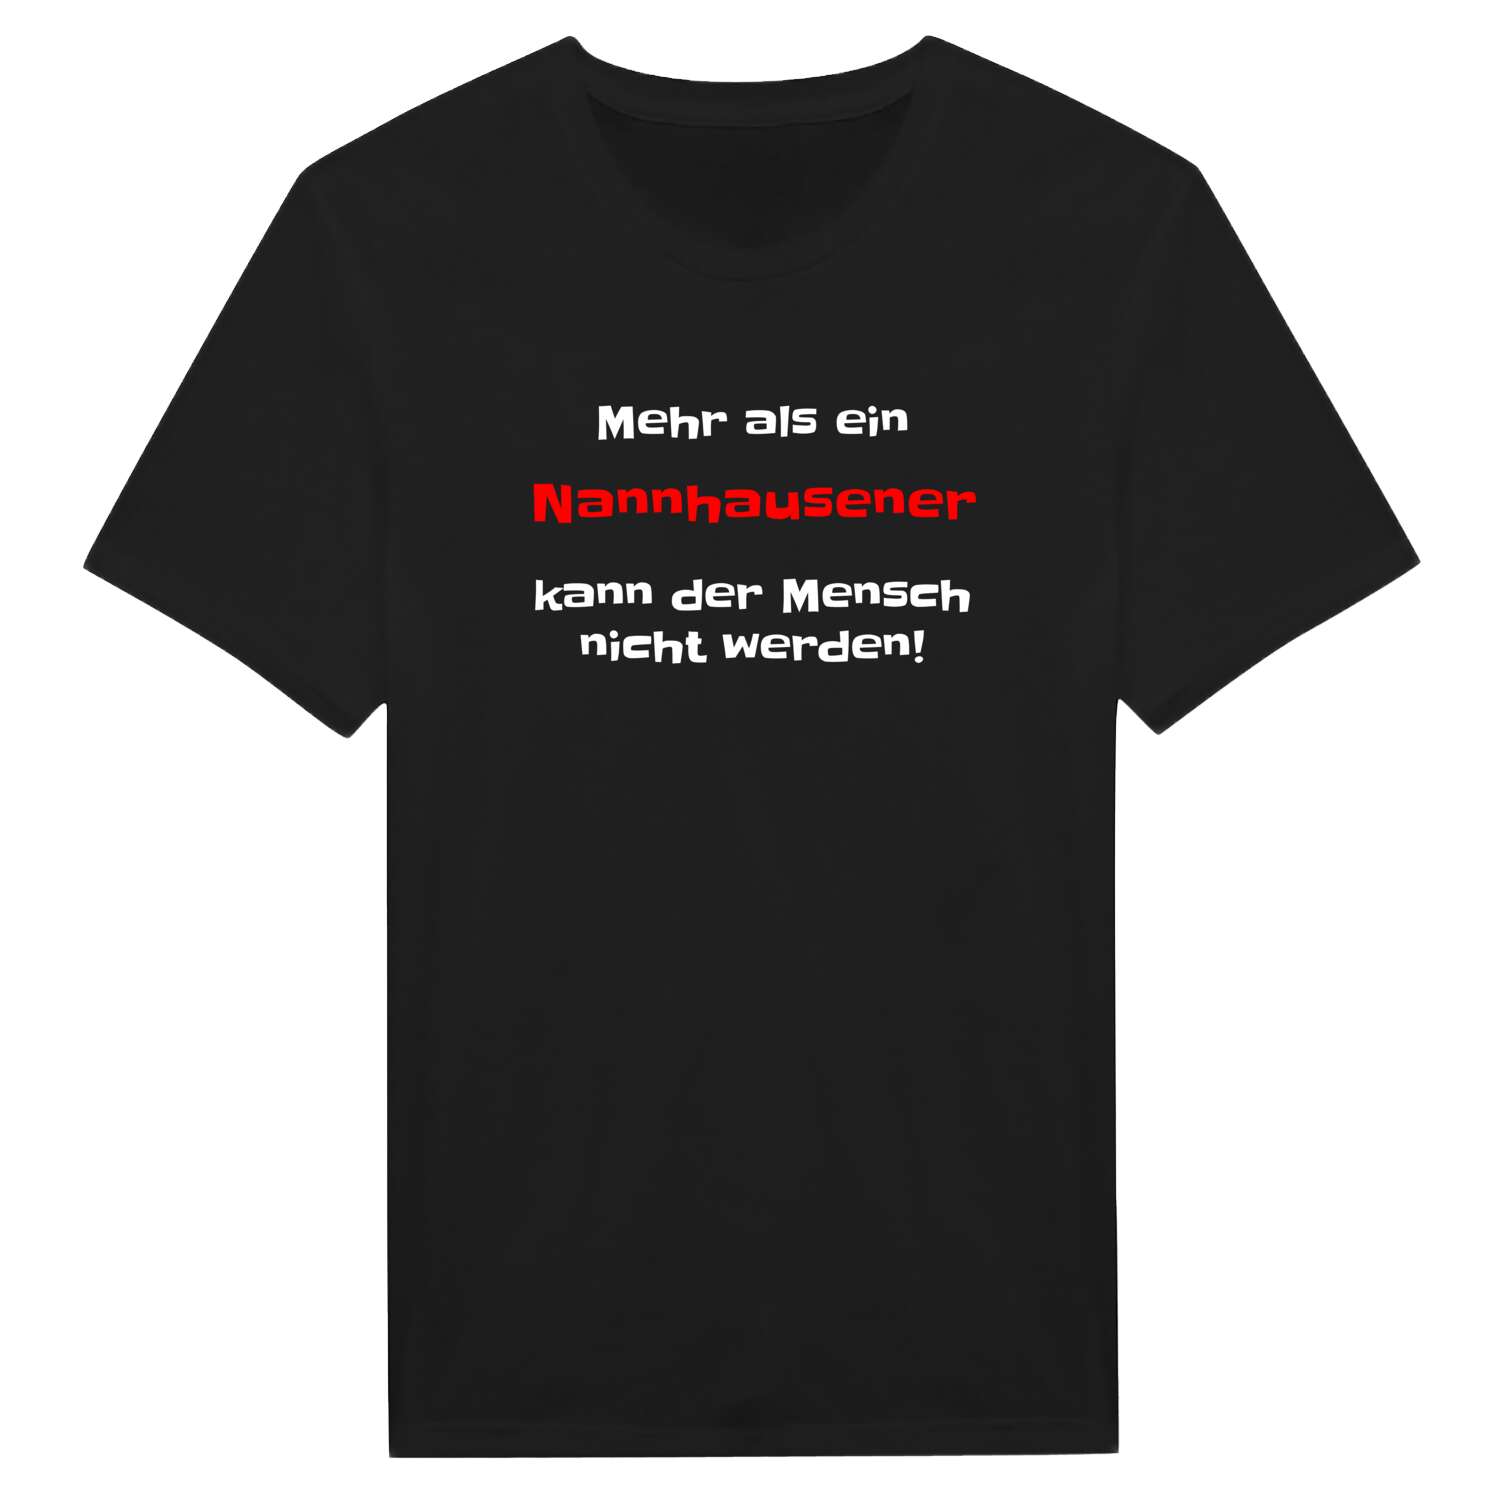 Nannhausen T-Shirt »Mehr als ein«